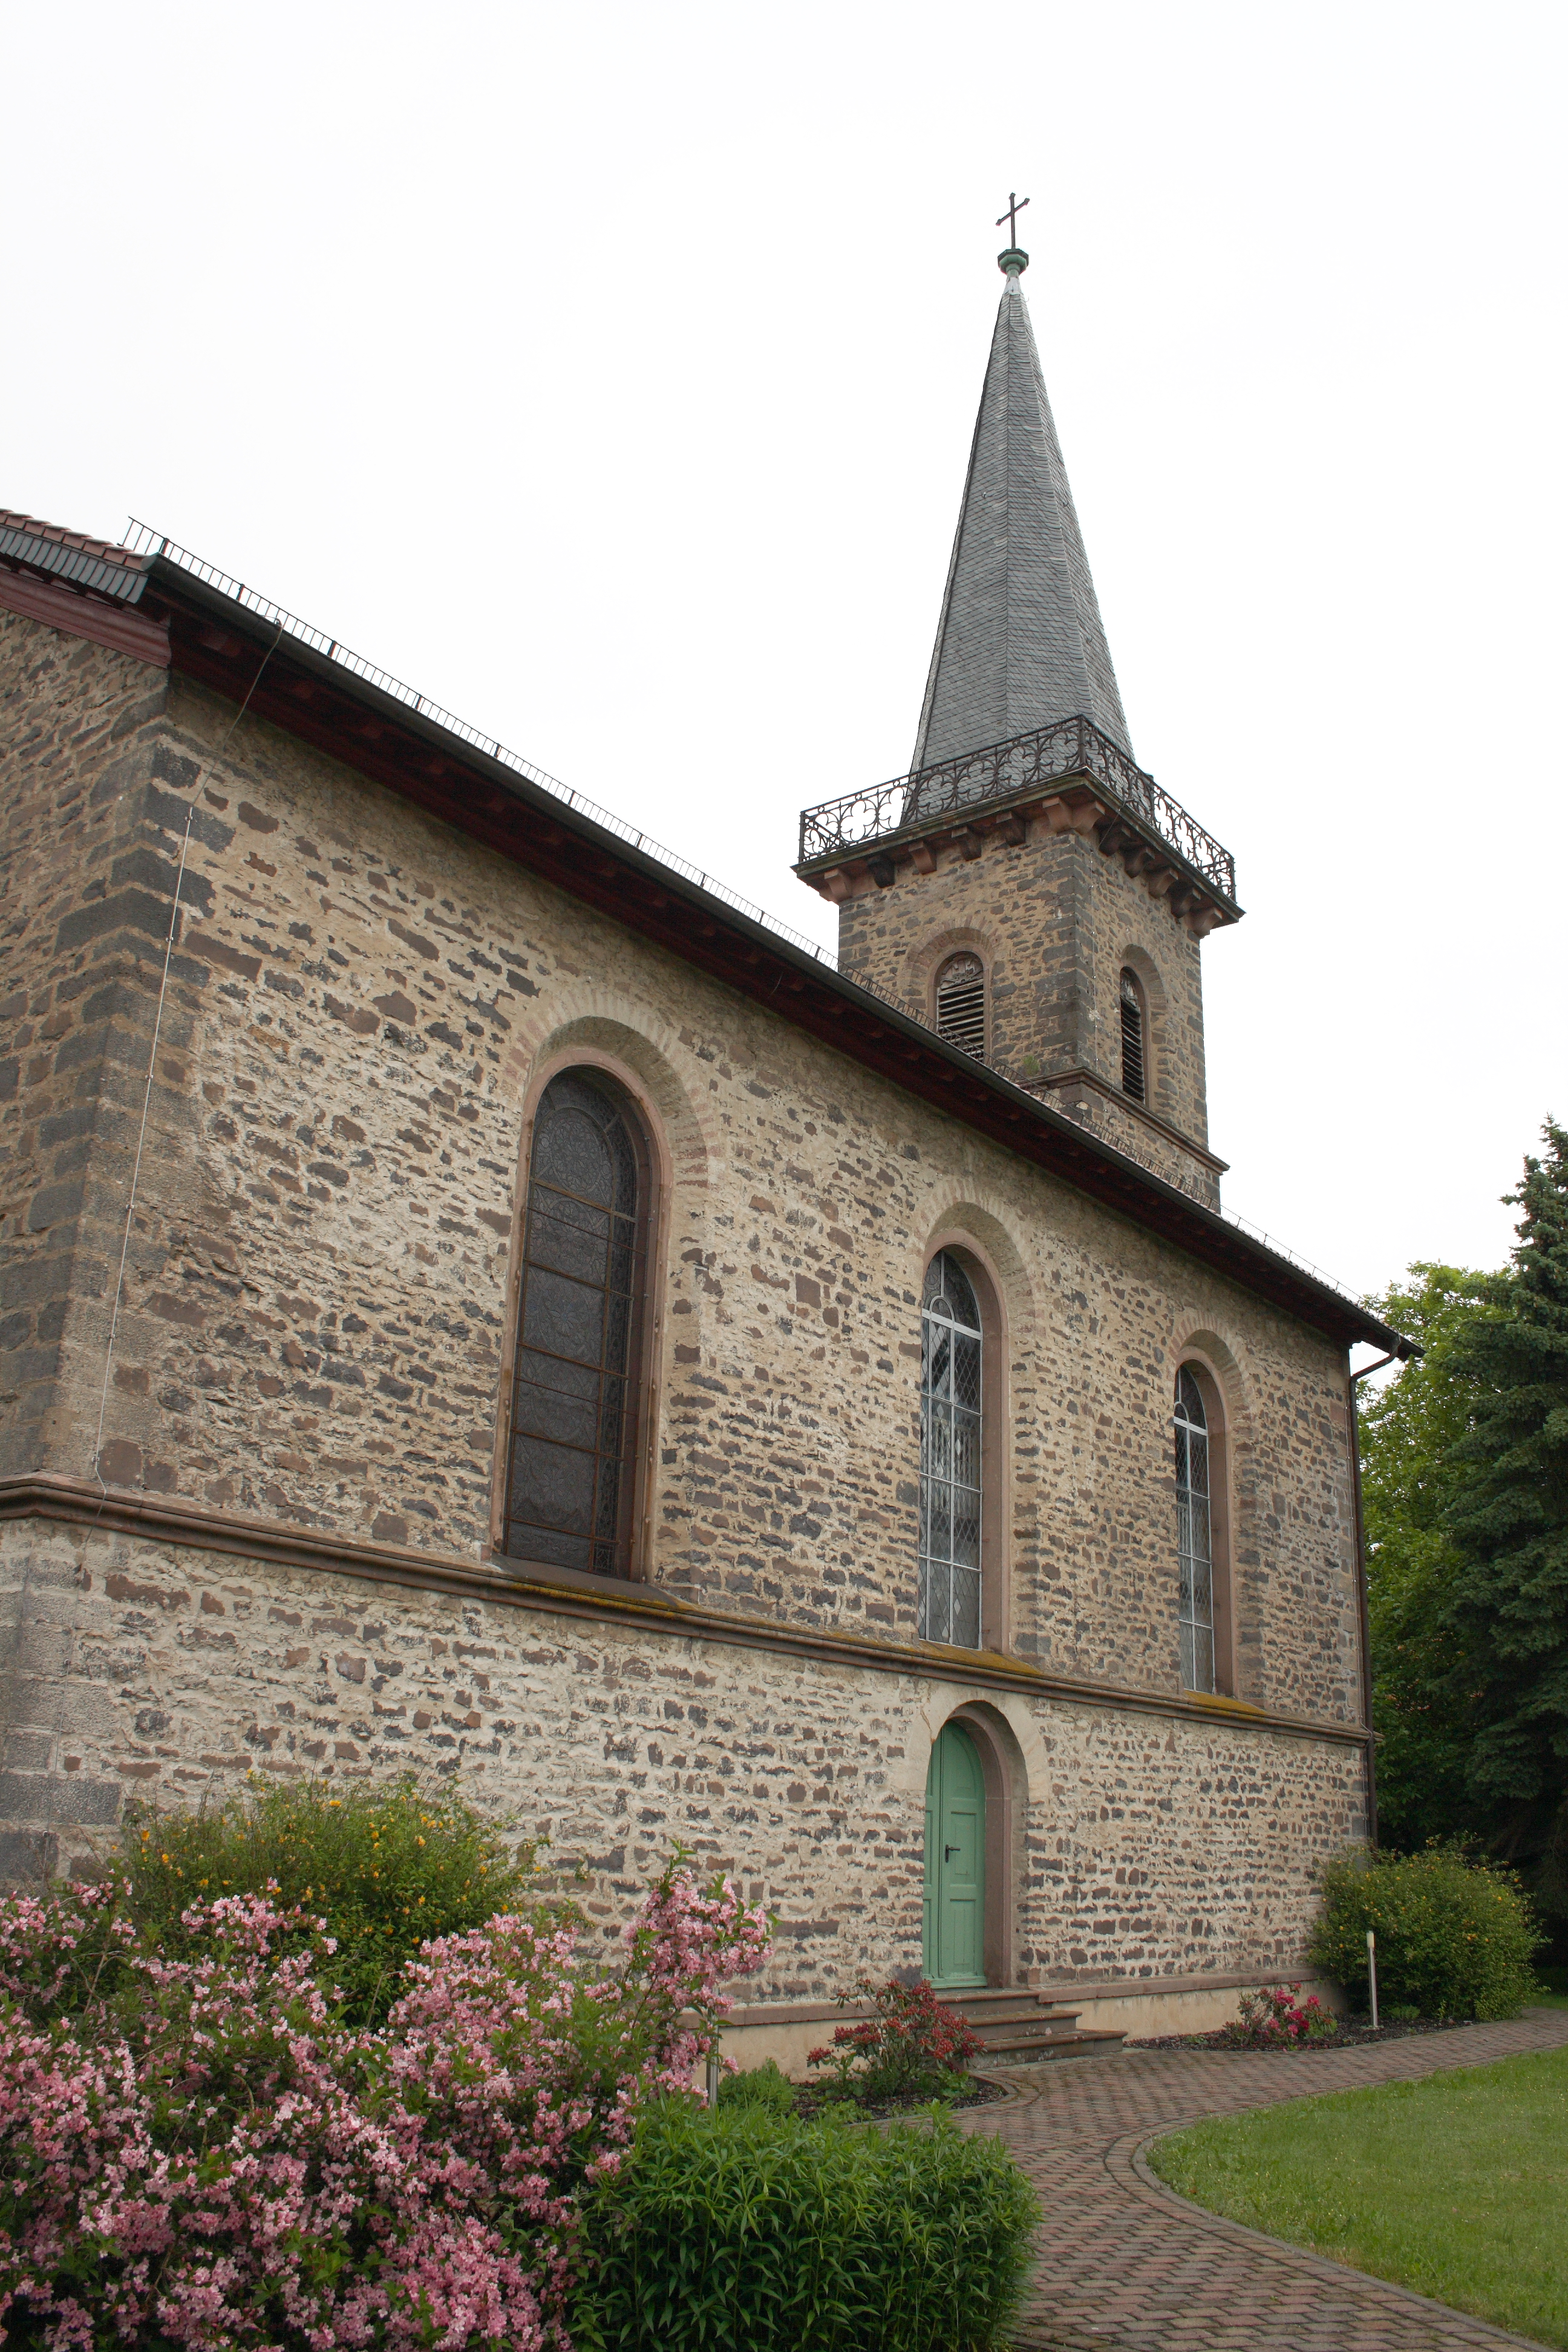 Evangelische Kirche in Windhausen, einem Ortsteil von Feldatal im Vogelsbergkreis (Hessen) in 2012. Source: Wikipedia.